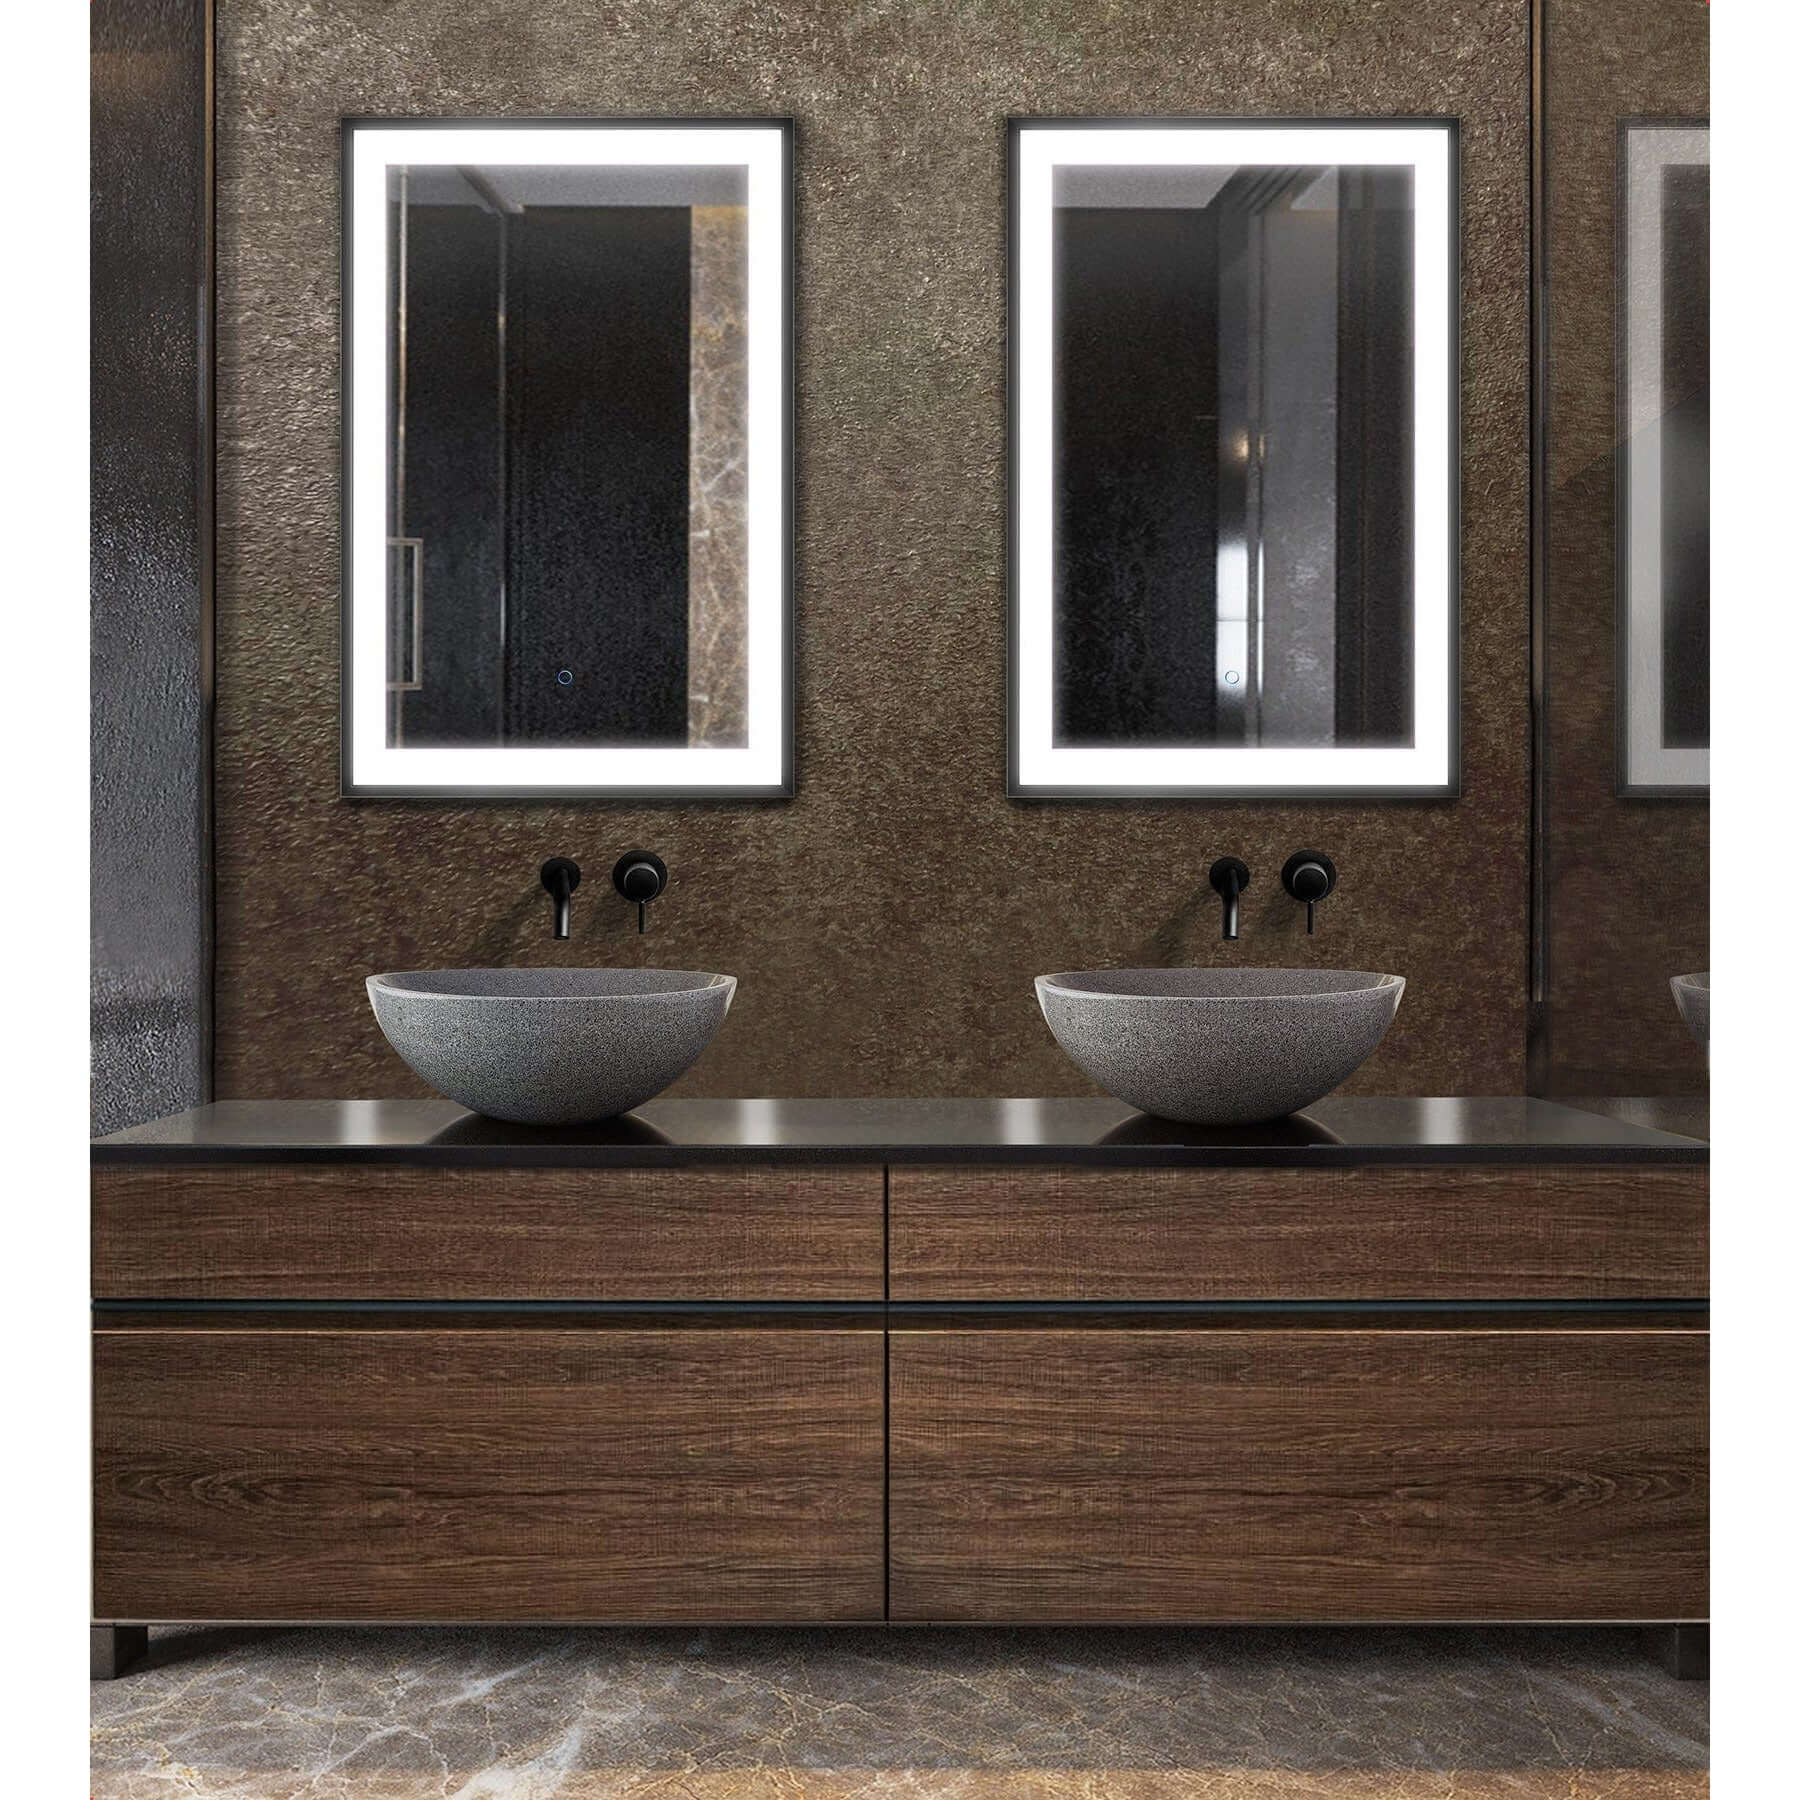 Lighted Bathroom Mirror - Krugg Soho Matte Black - SOHO2436B